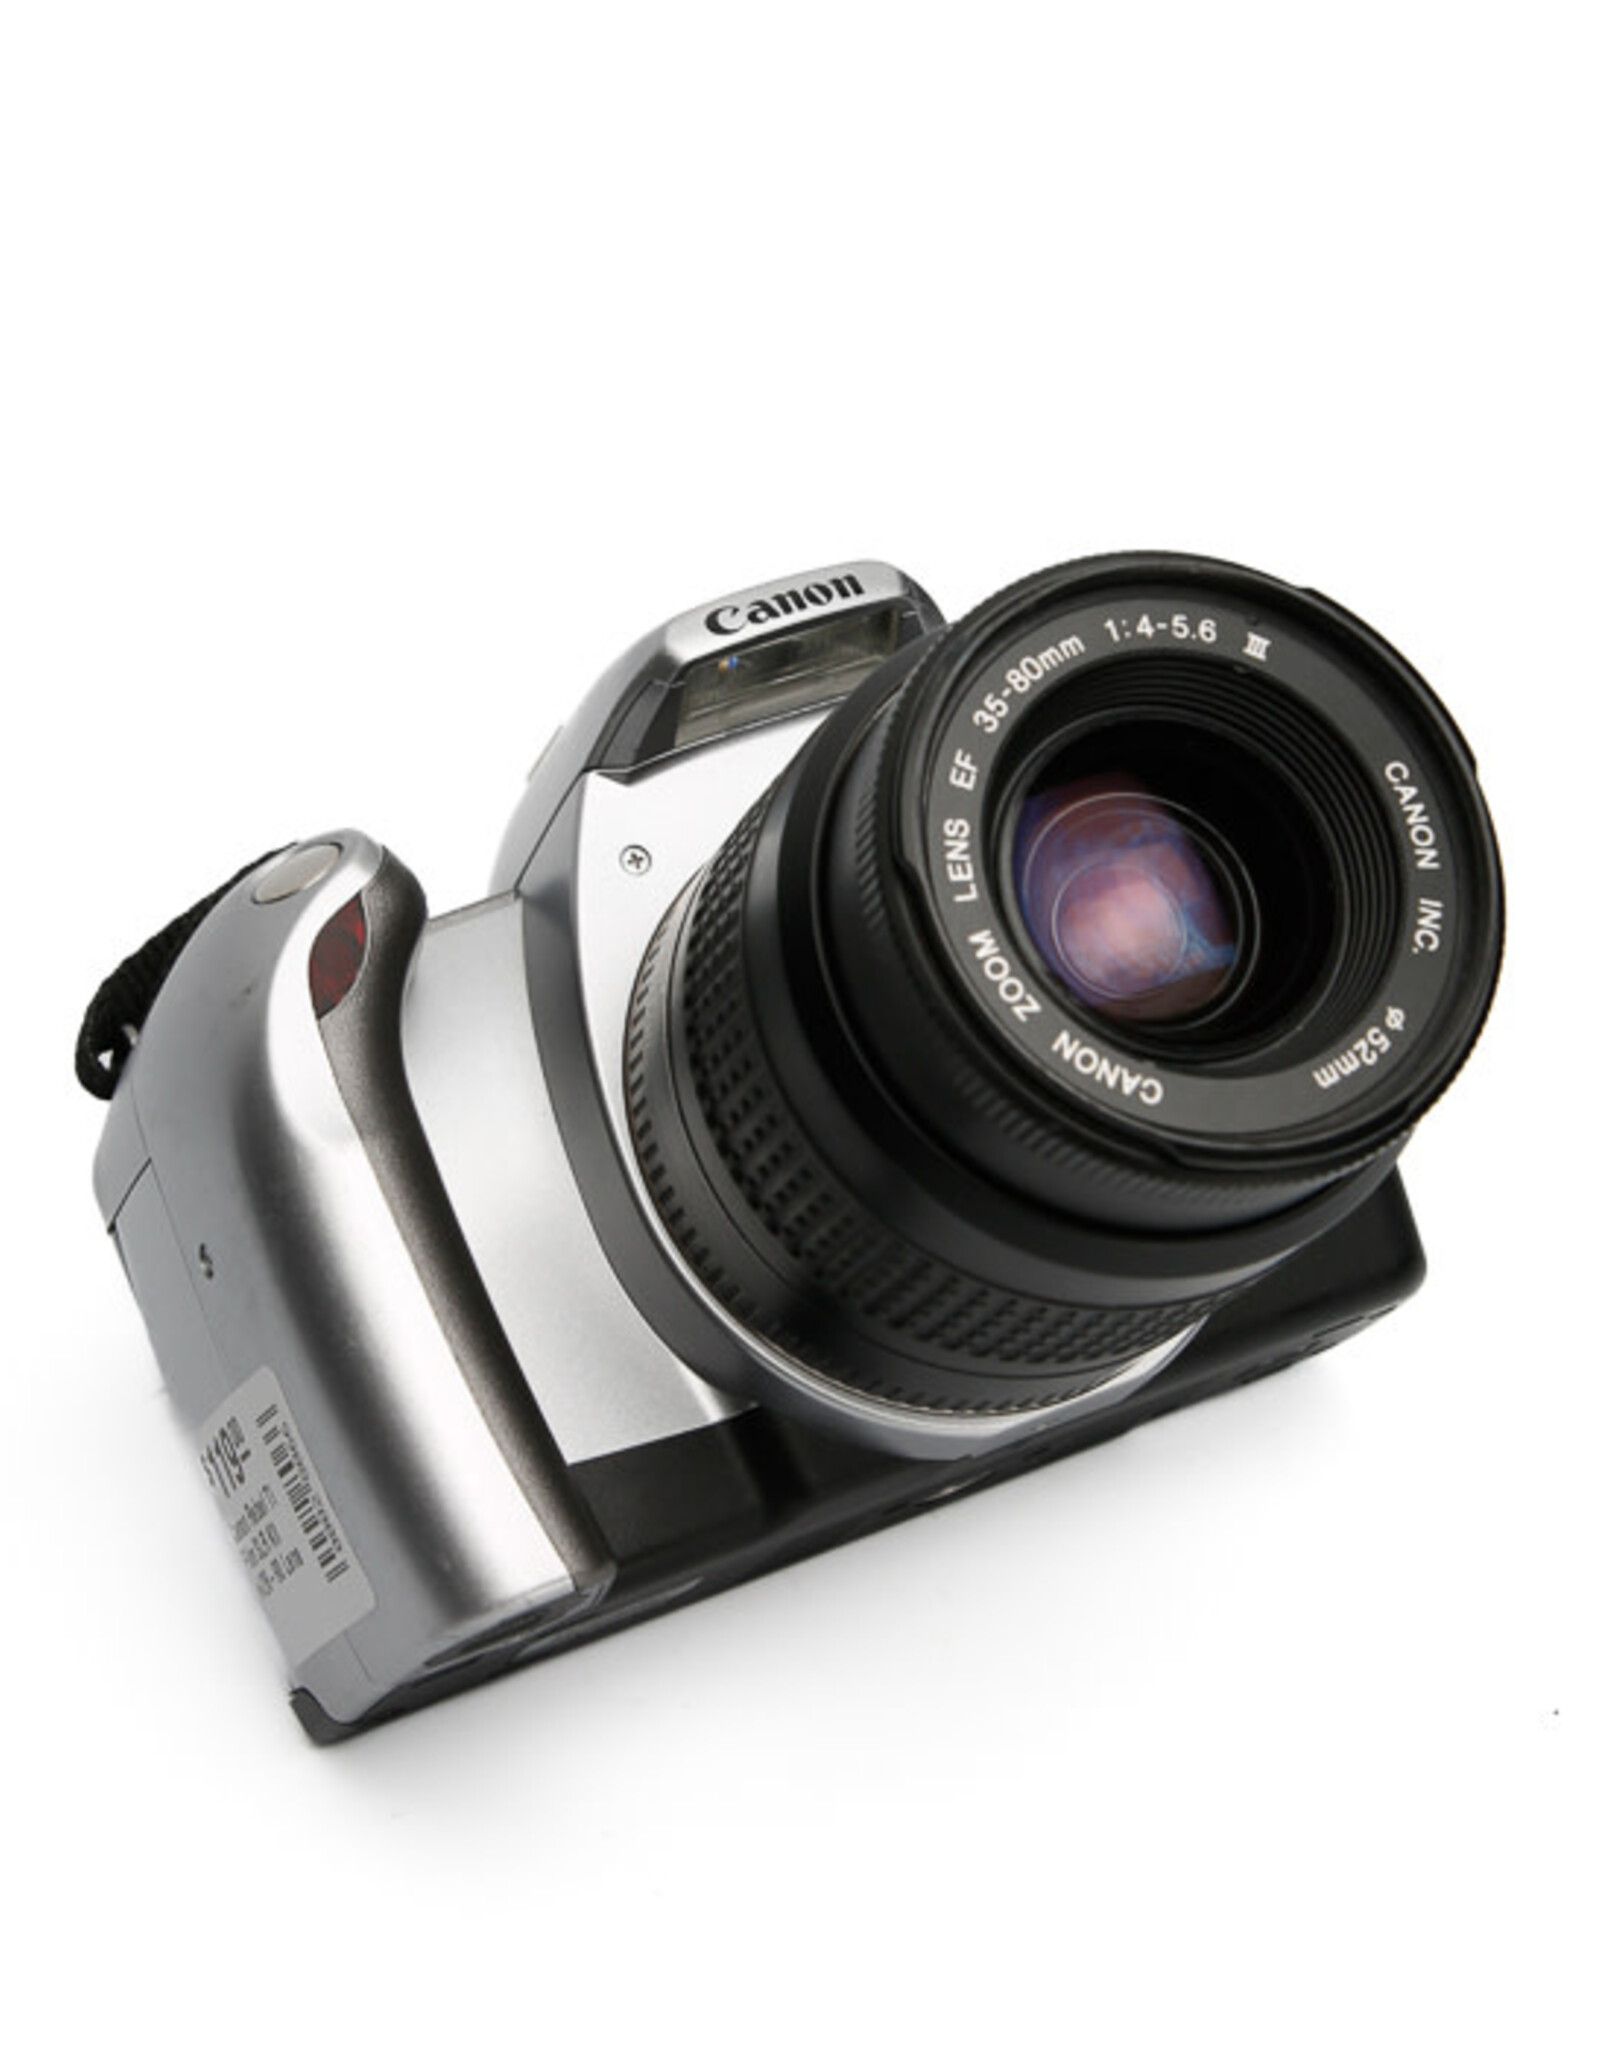 Canon Canon Rebel Ti Film SLR Kit w/35-80mm f4-5.6 Lens